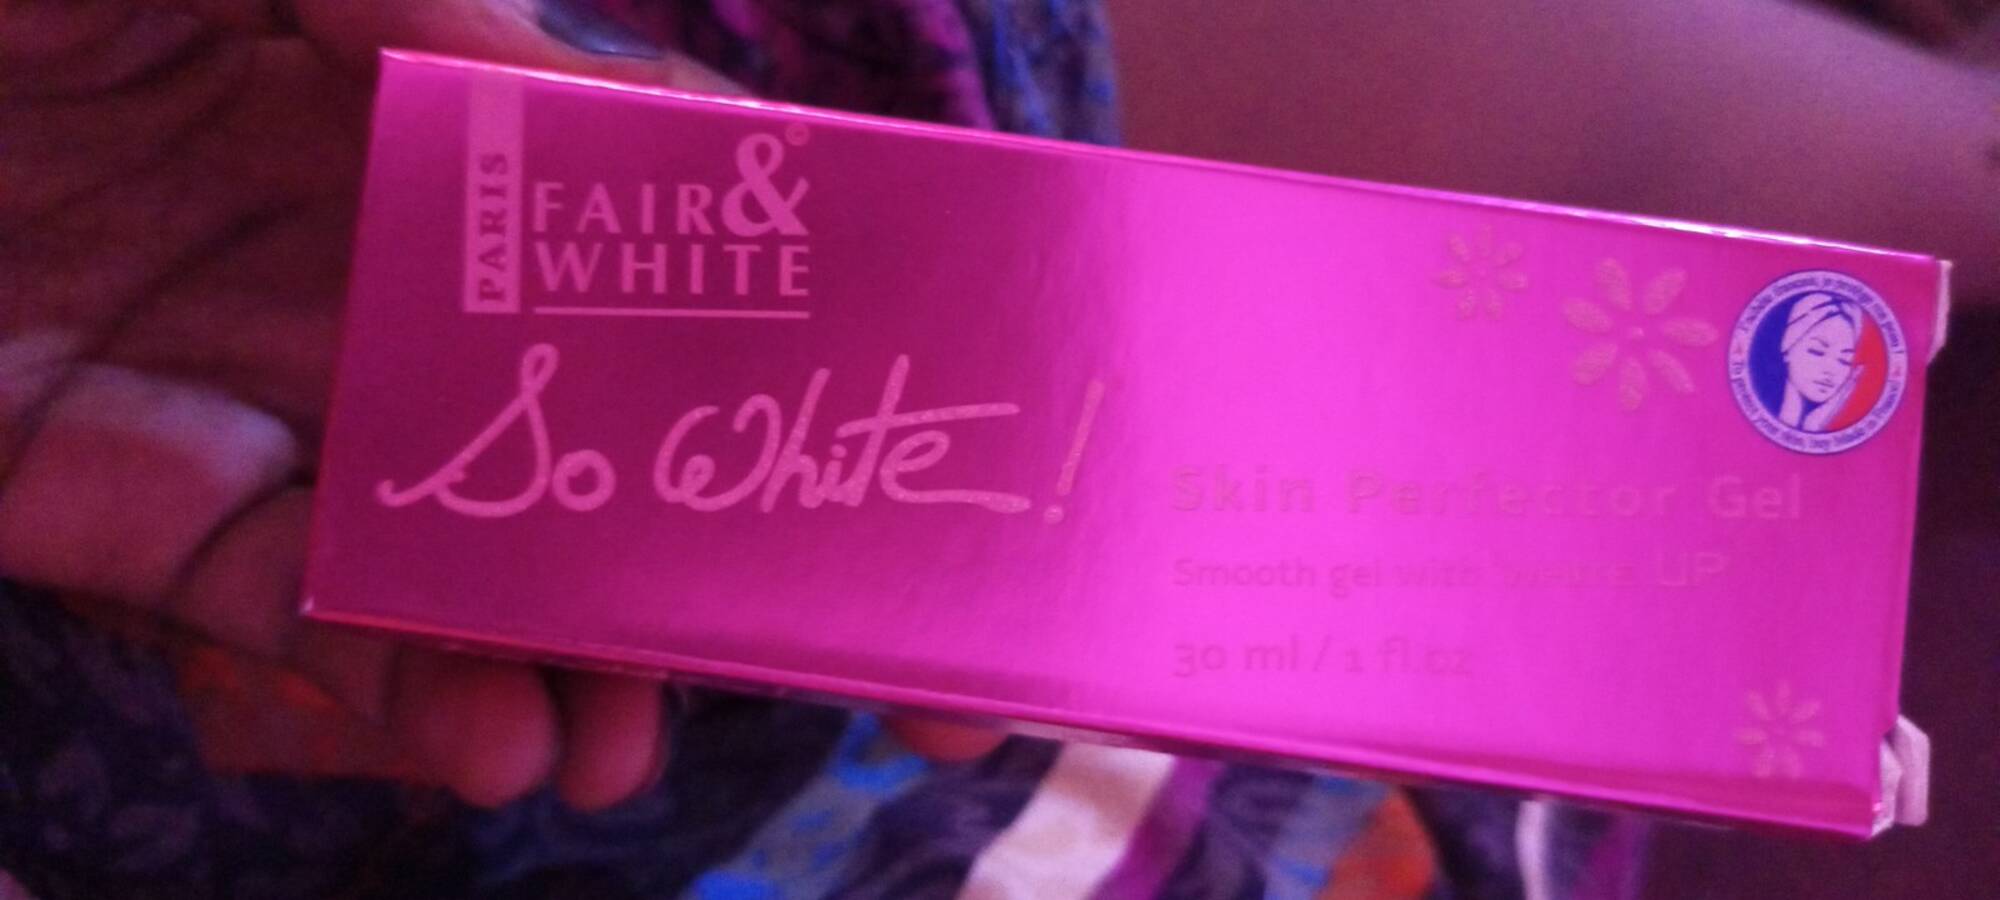 FAIR & WHITE - So white ! - Skin perfector gel 